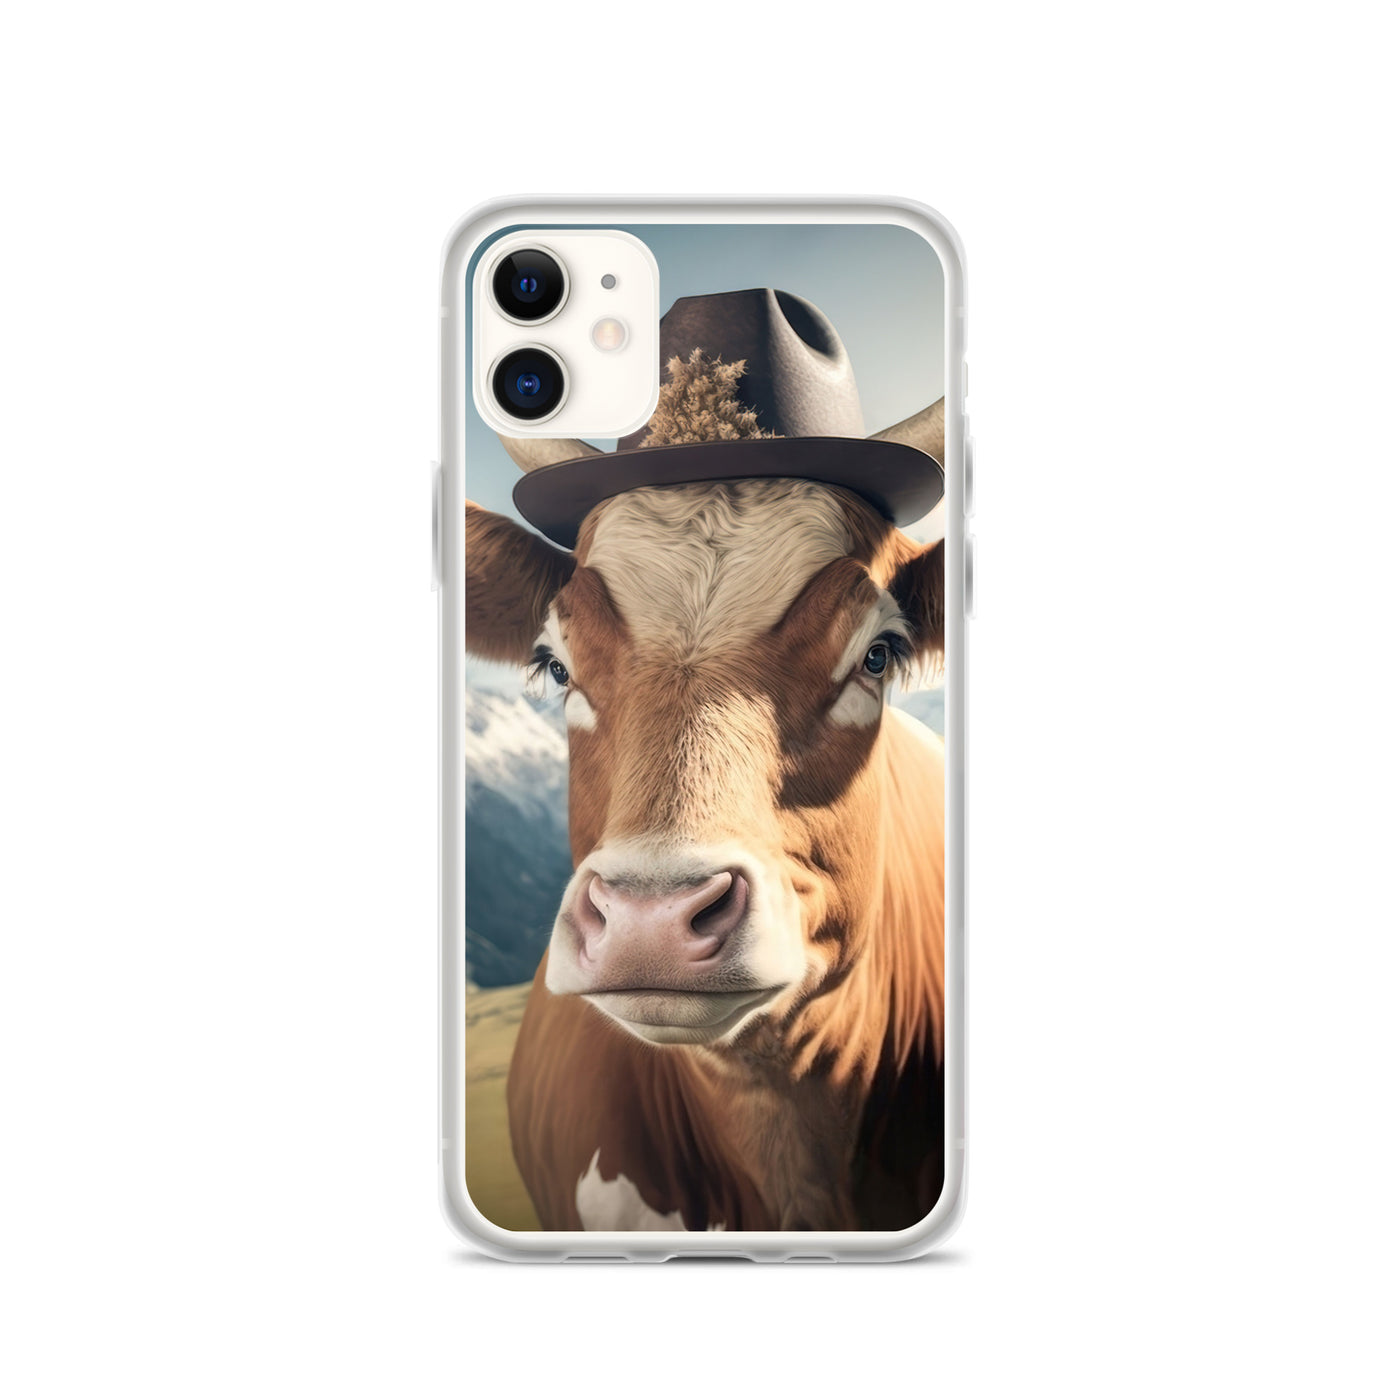 Kuh mit Hut in den Alpen - Berge im Hintergrund - Landschaftsmalerei - iPhone Schutzhülle (durchsichtig) berge xxx iPhone 11